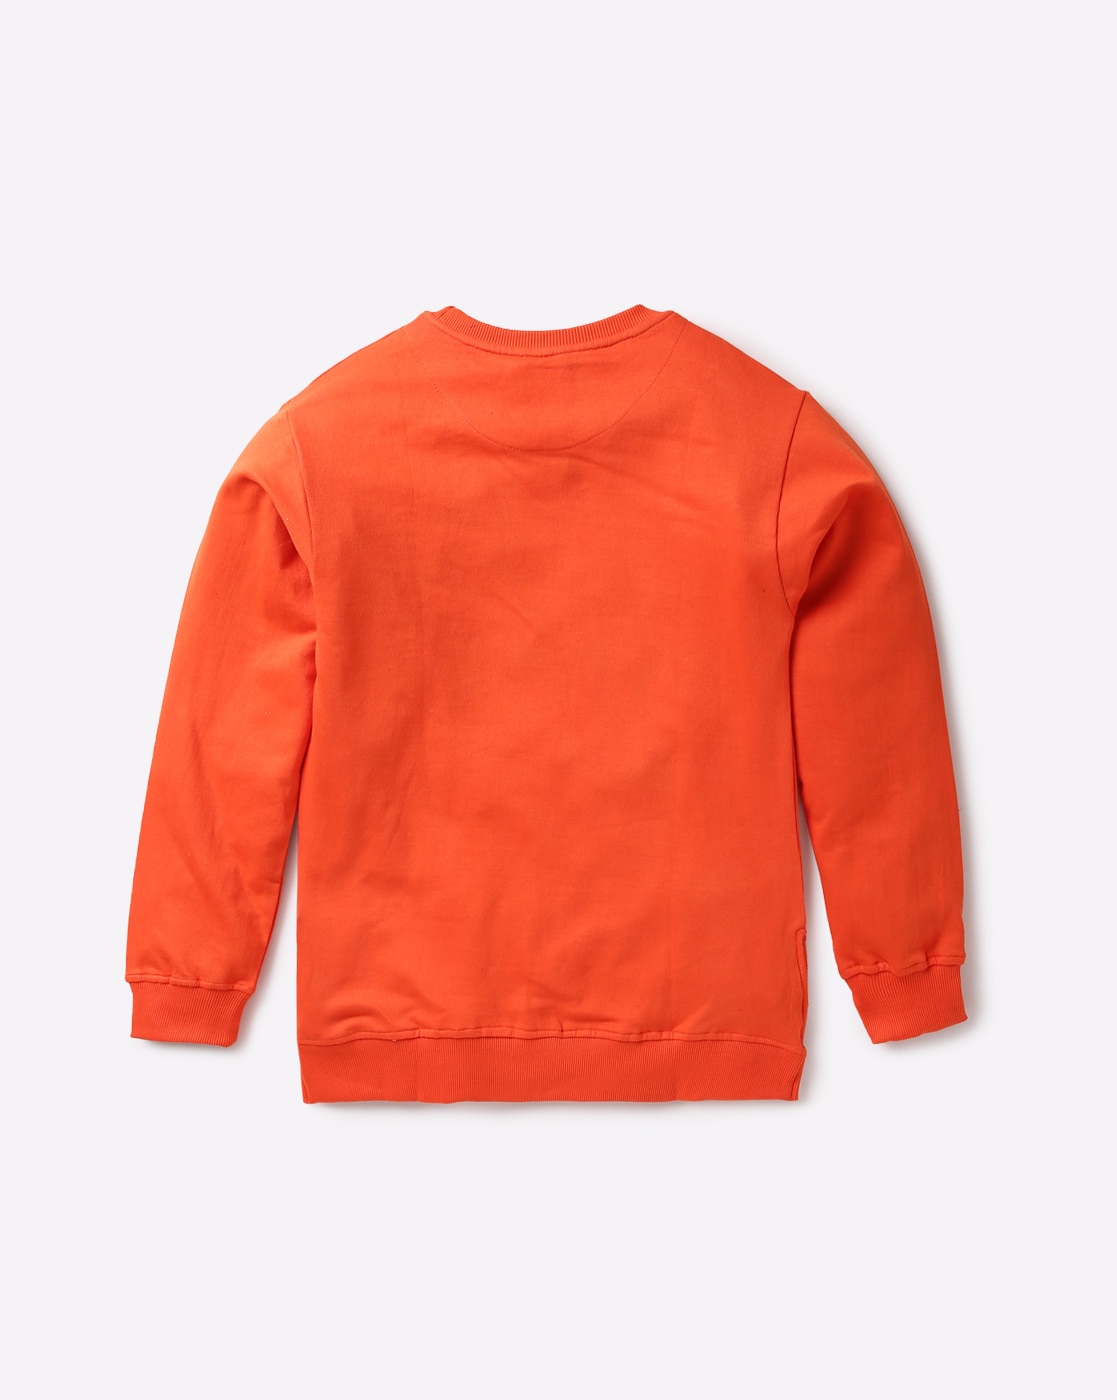 orange crew neck sweatshirt